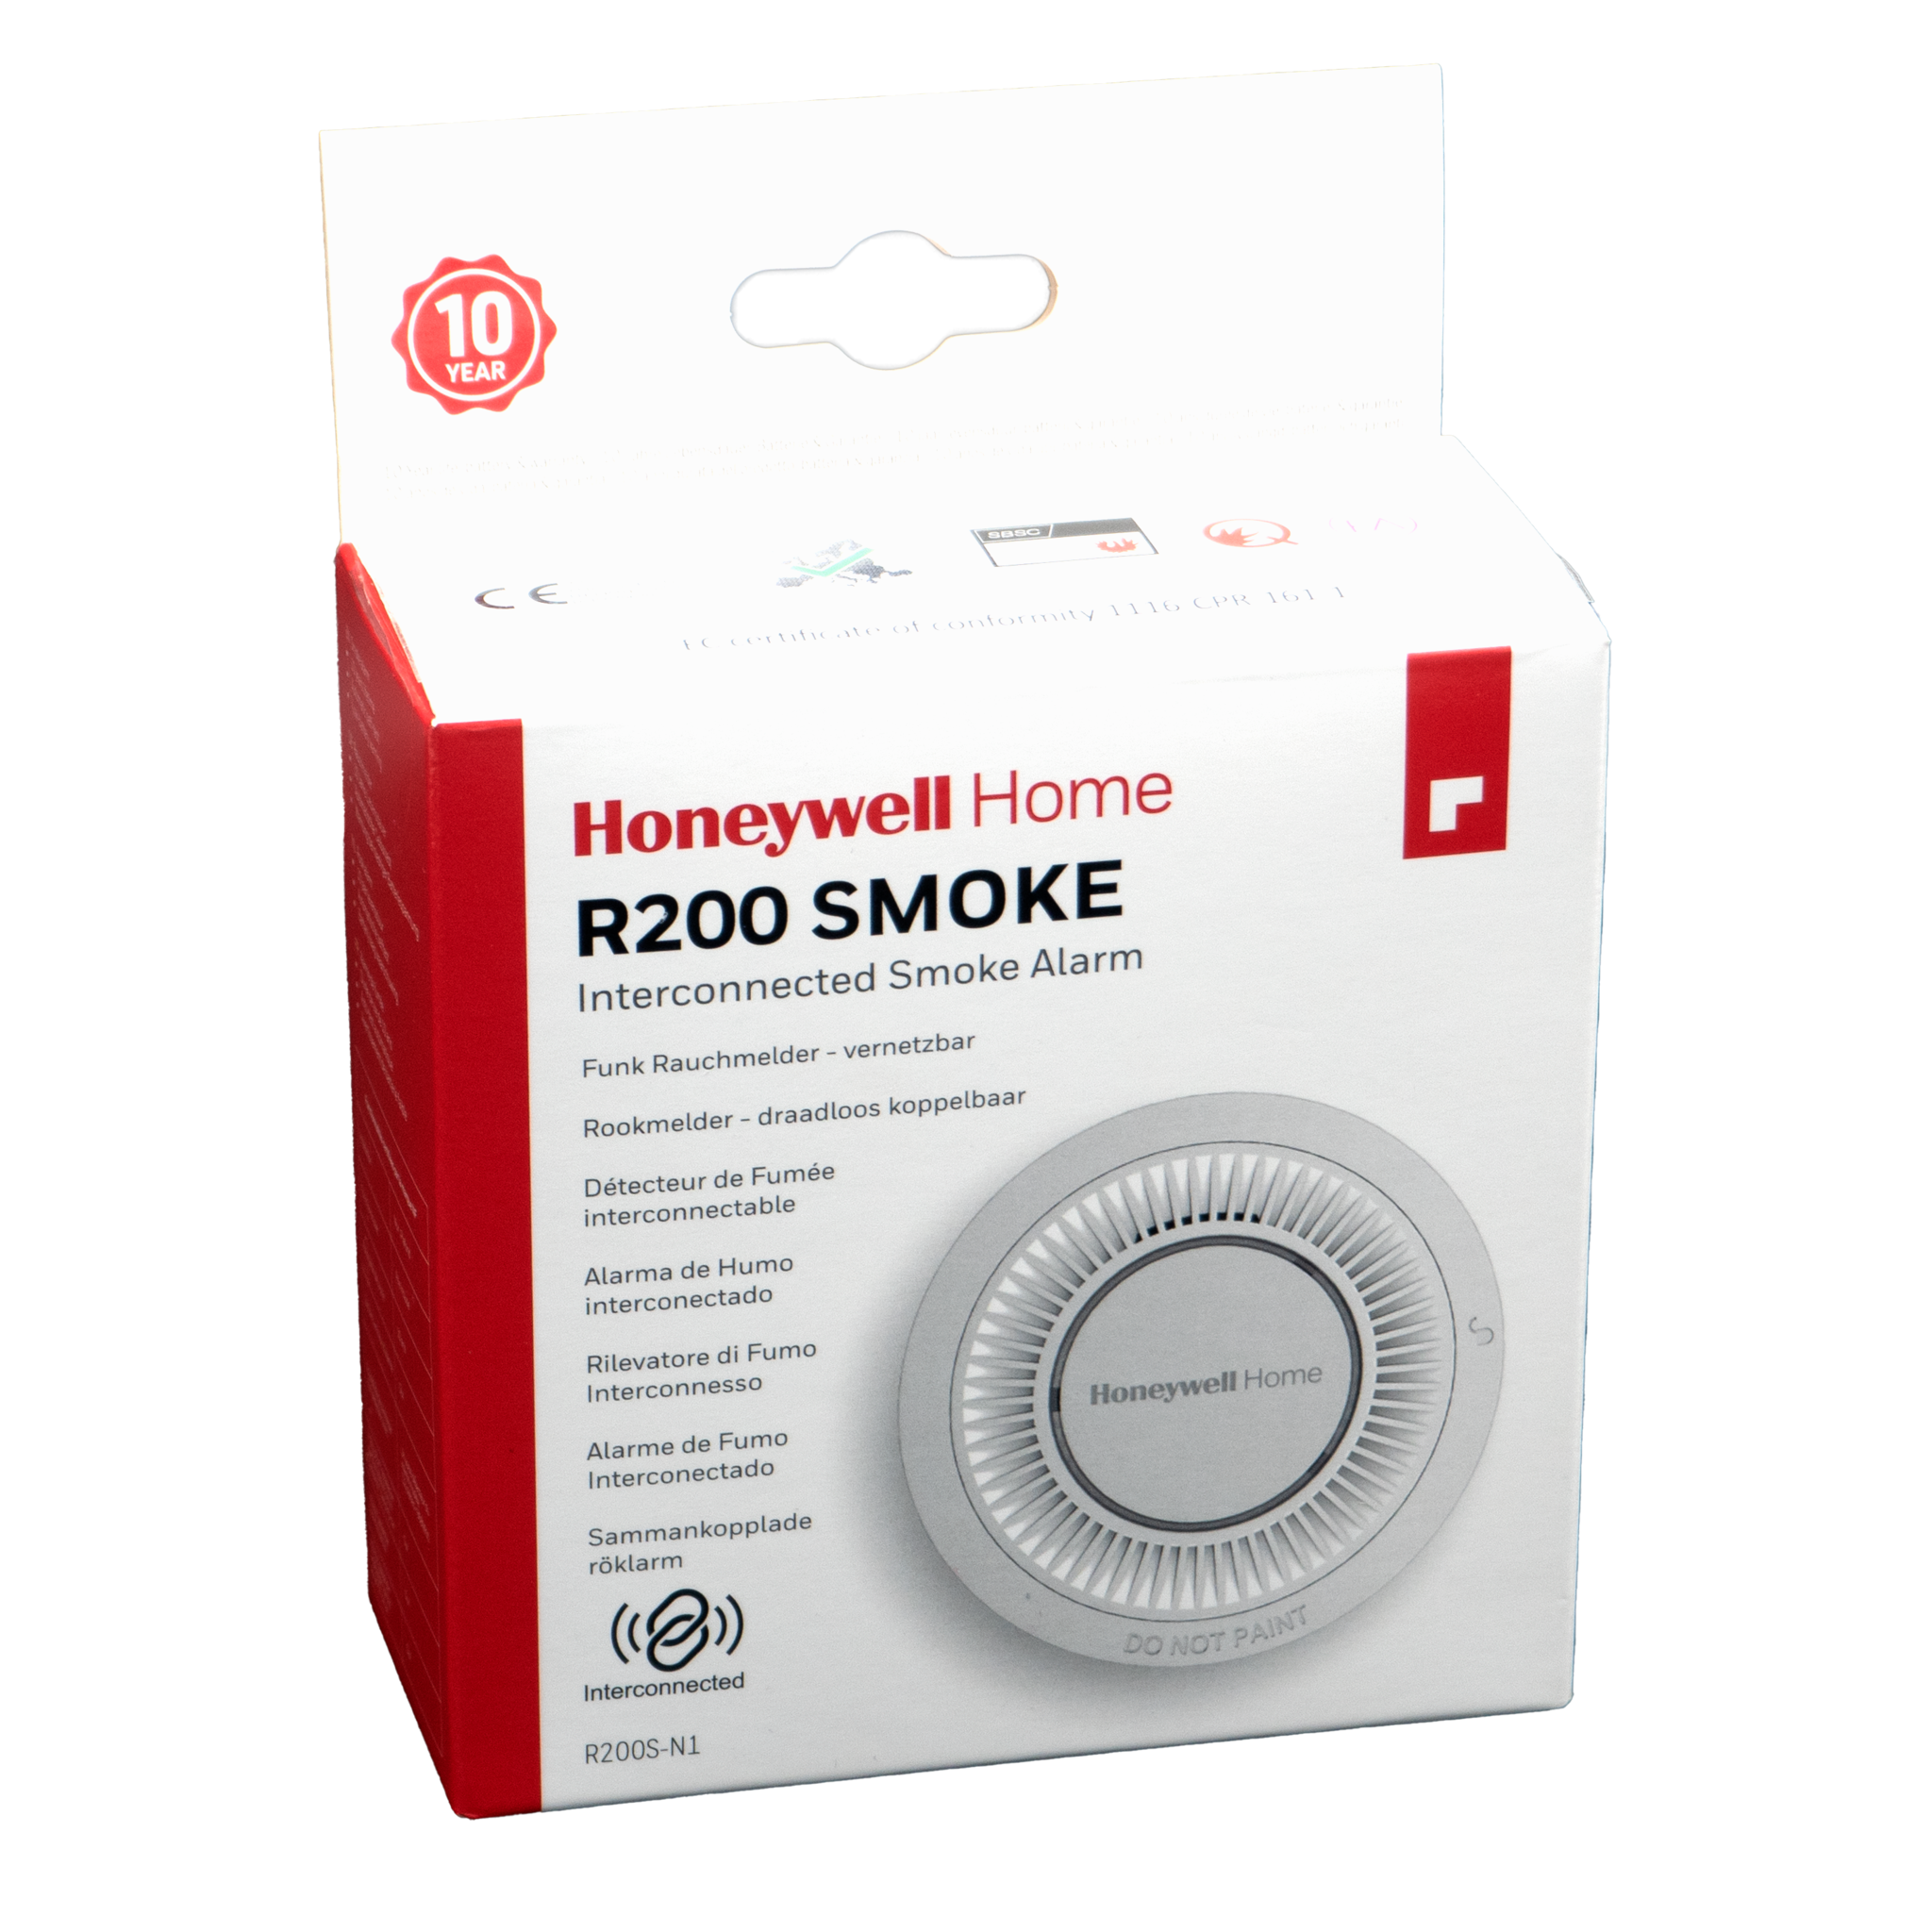 Honeywell Home Honeywell Home rookmelder R200S-N1